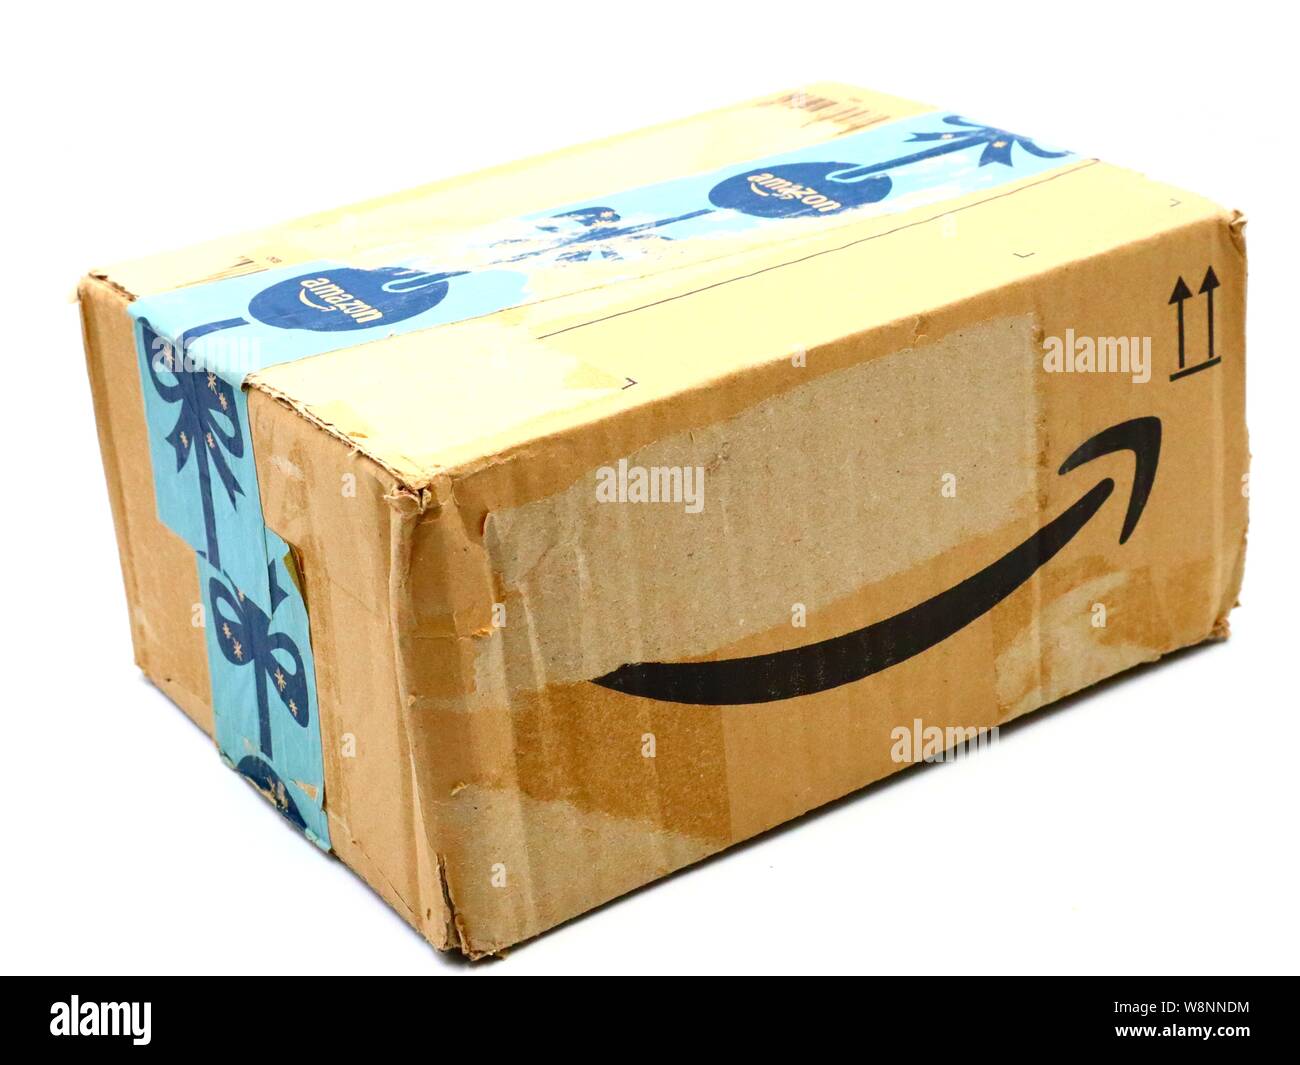 Usato AMAZON confezione di spedizione pacchi scatola di cartone. Amazon è  una multinazionale americana tecnologia società di e-commerce Foto stock -  Alamy